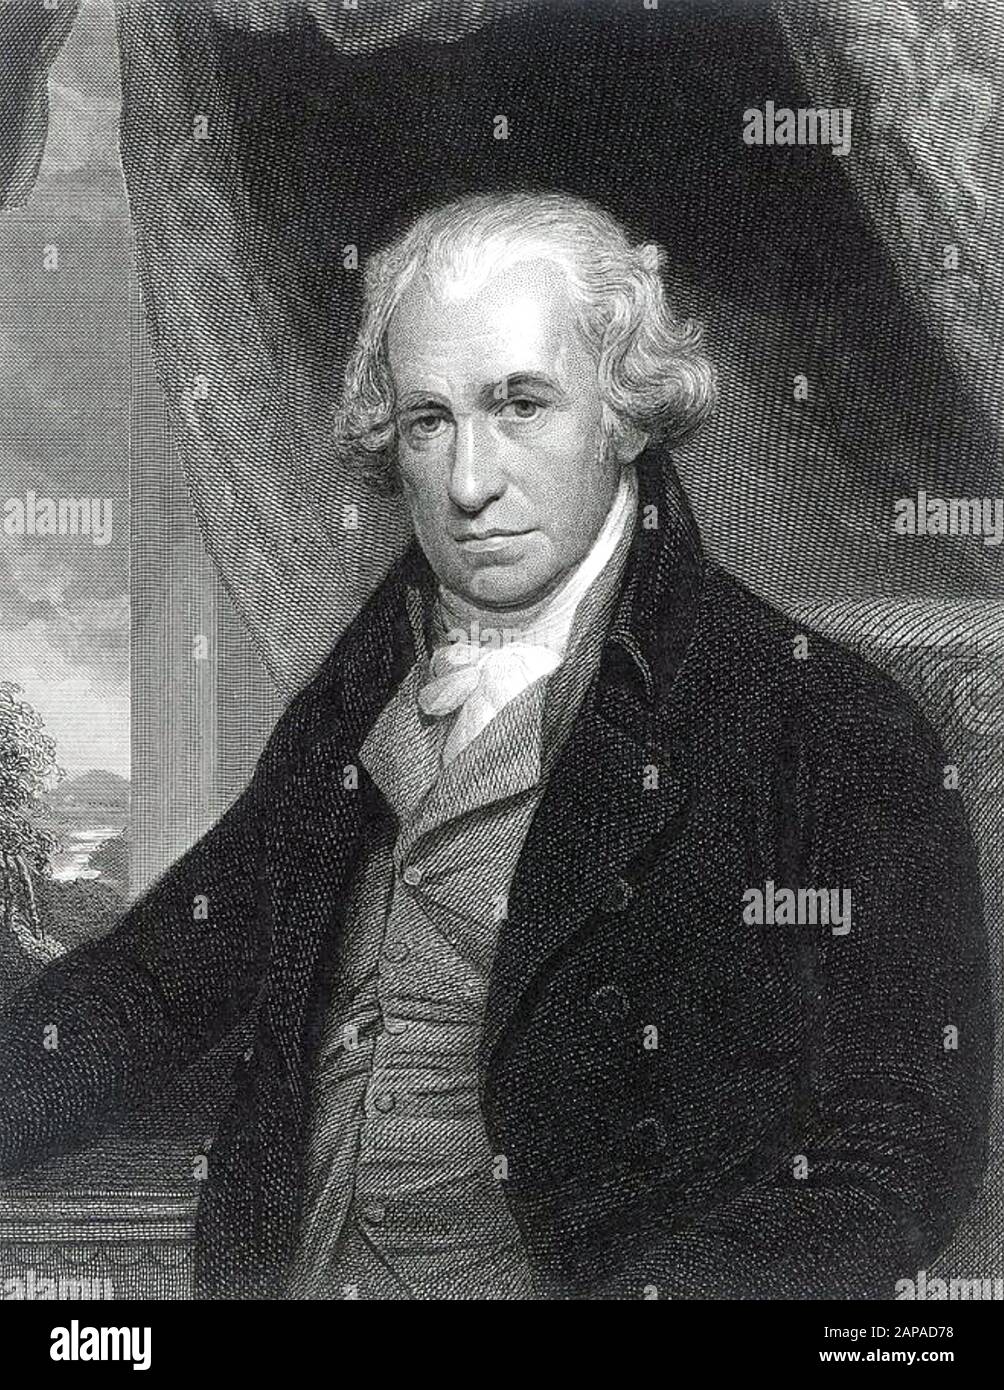 James WATT (1736-1819) inventor y químico escocés Foto de stock